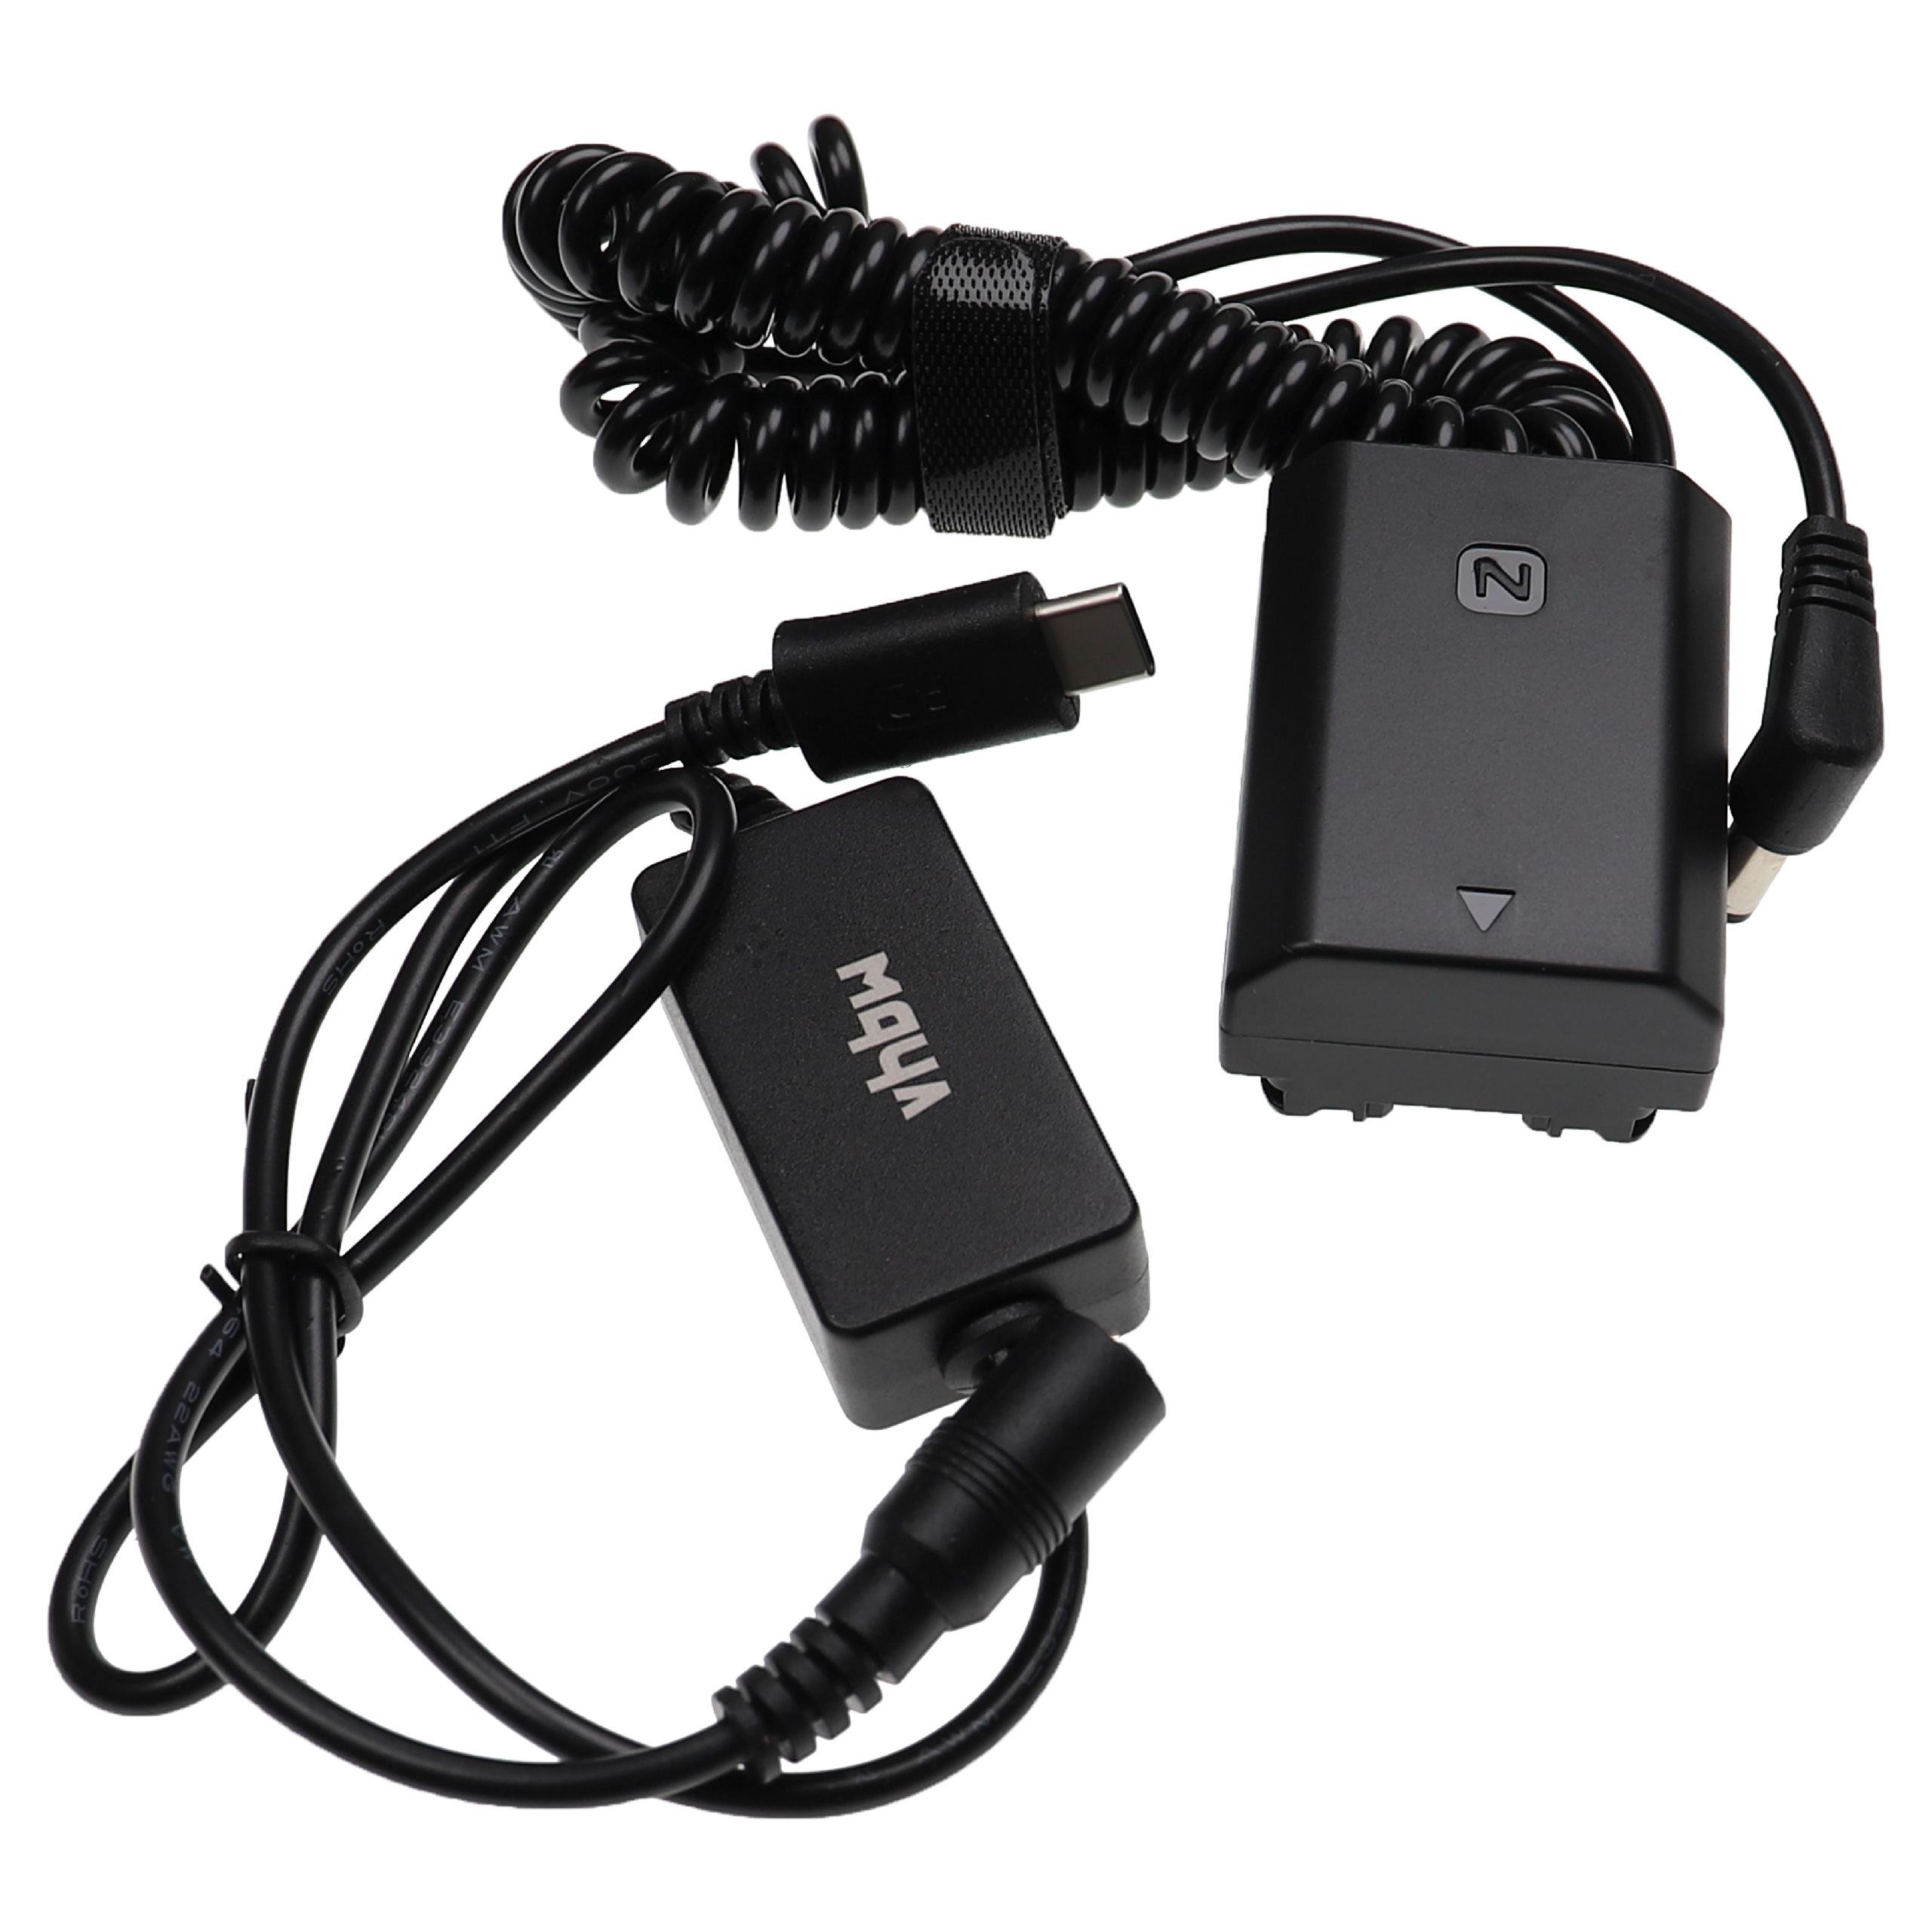 Zasilacz USB do aparatu zam. AC-FZ100 + adapter zam. Sony NP-FZ100 - 2 m, 8,4 V 3,0 A